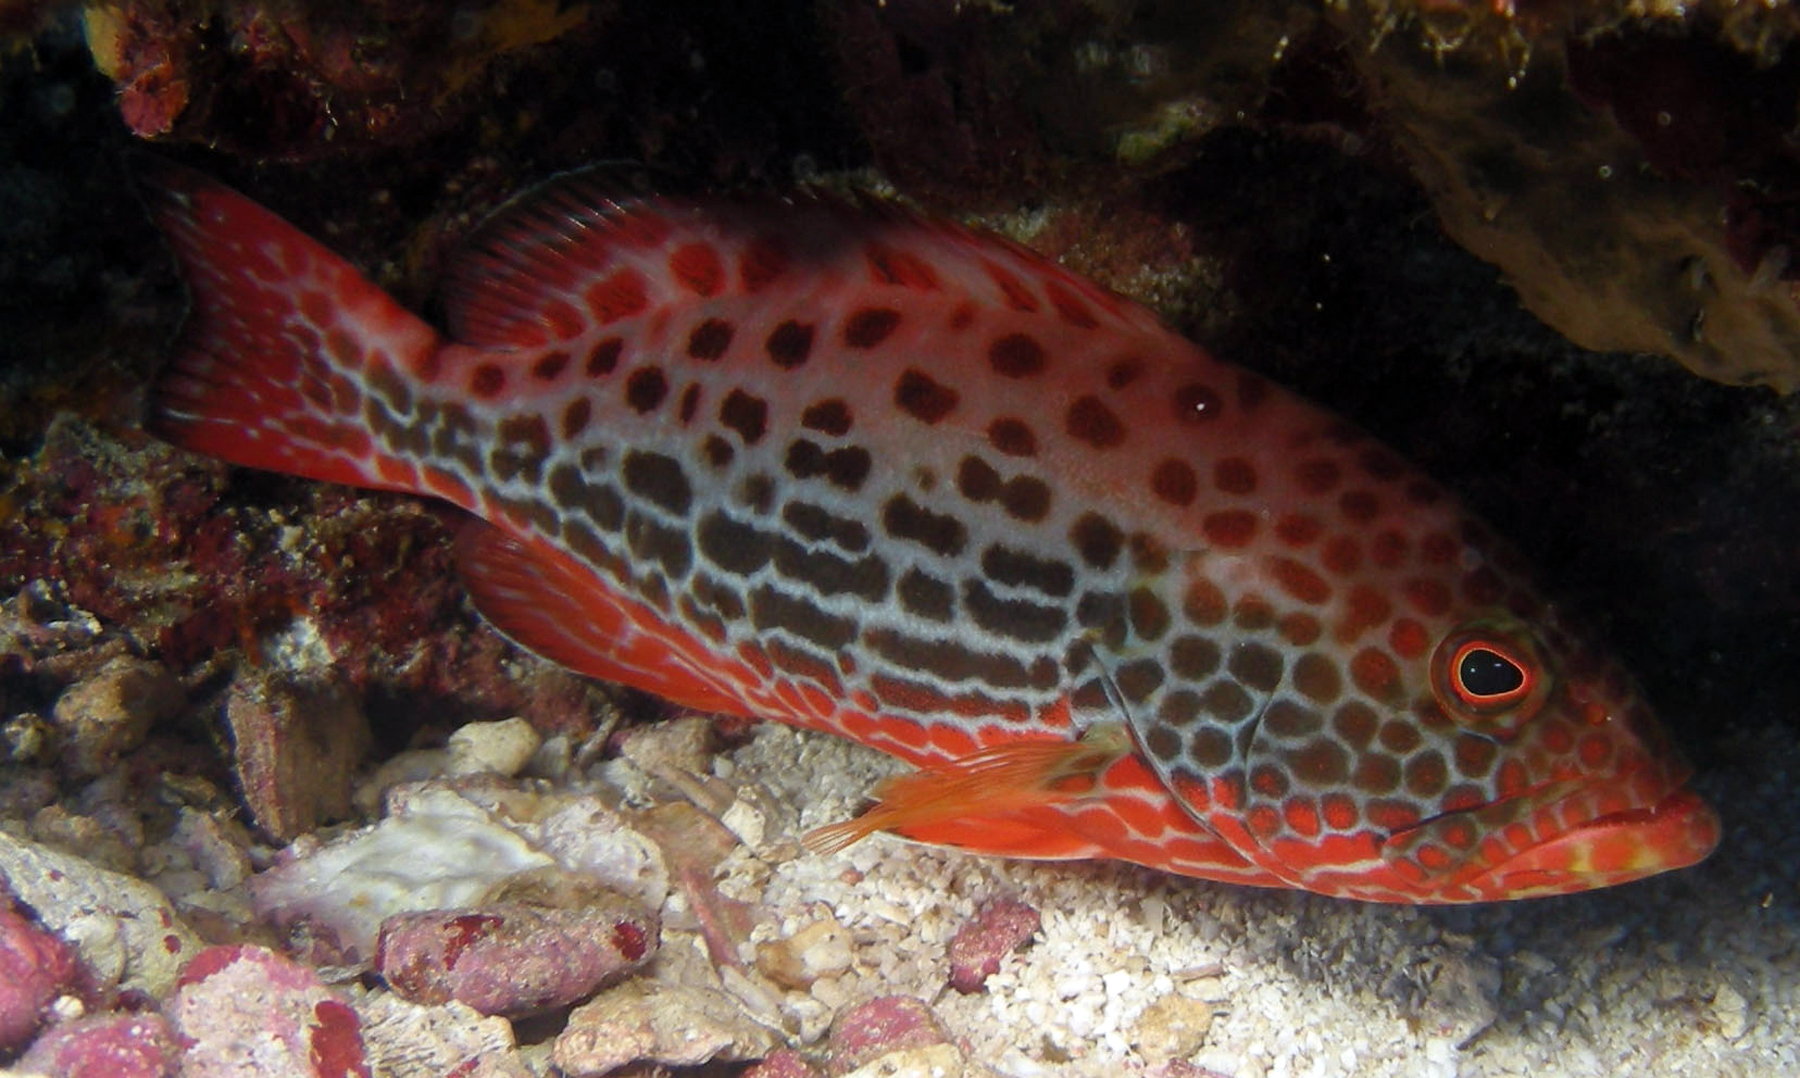 Групер рыба. описание, особенности и среда обитания рыбы групер